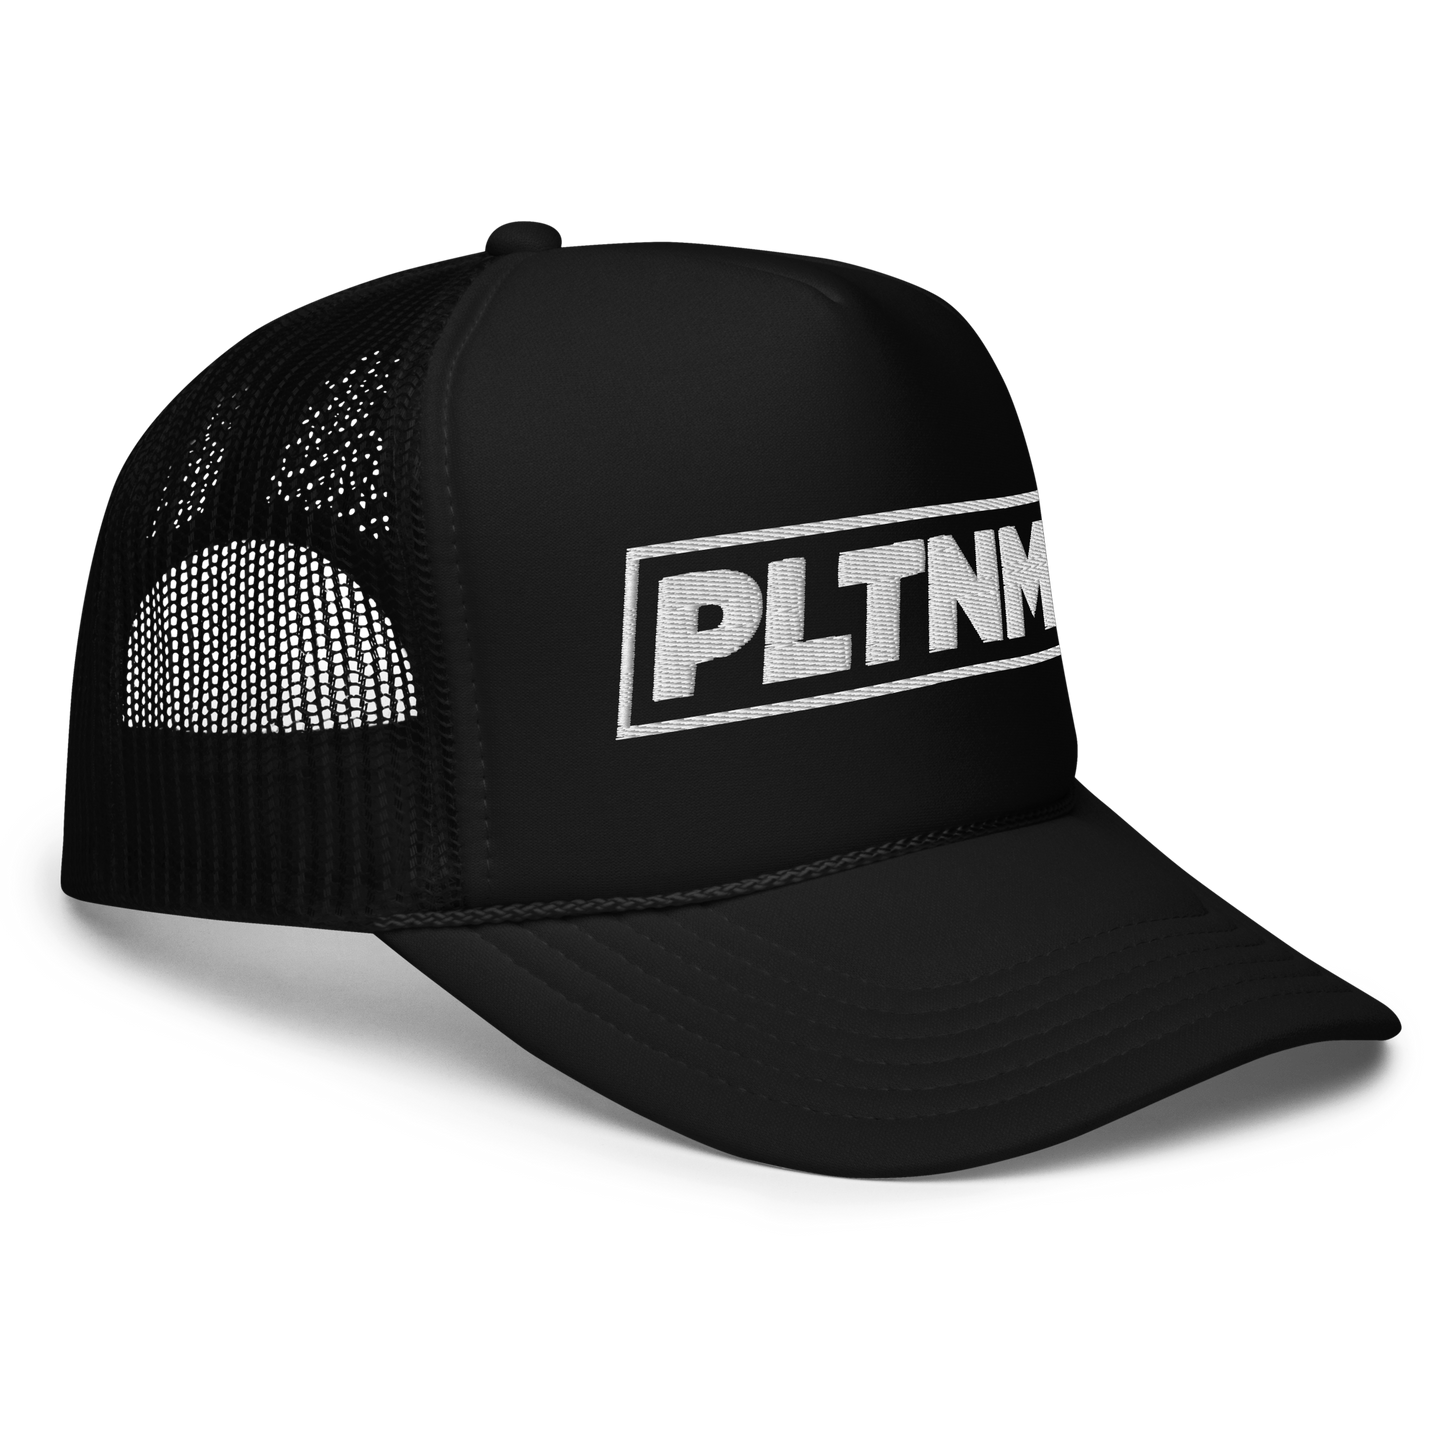 PLTNM Trucker Hat